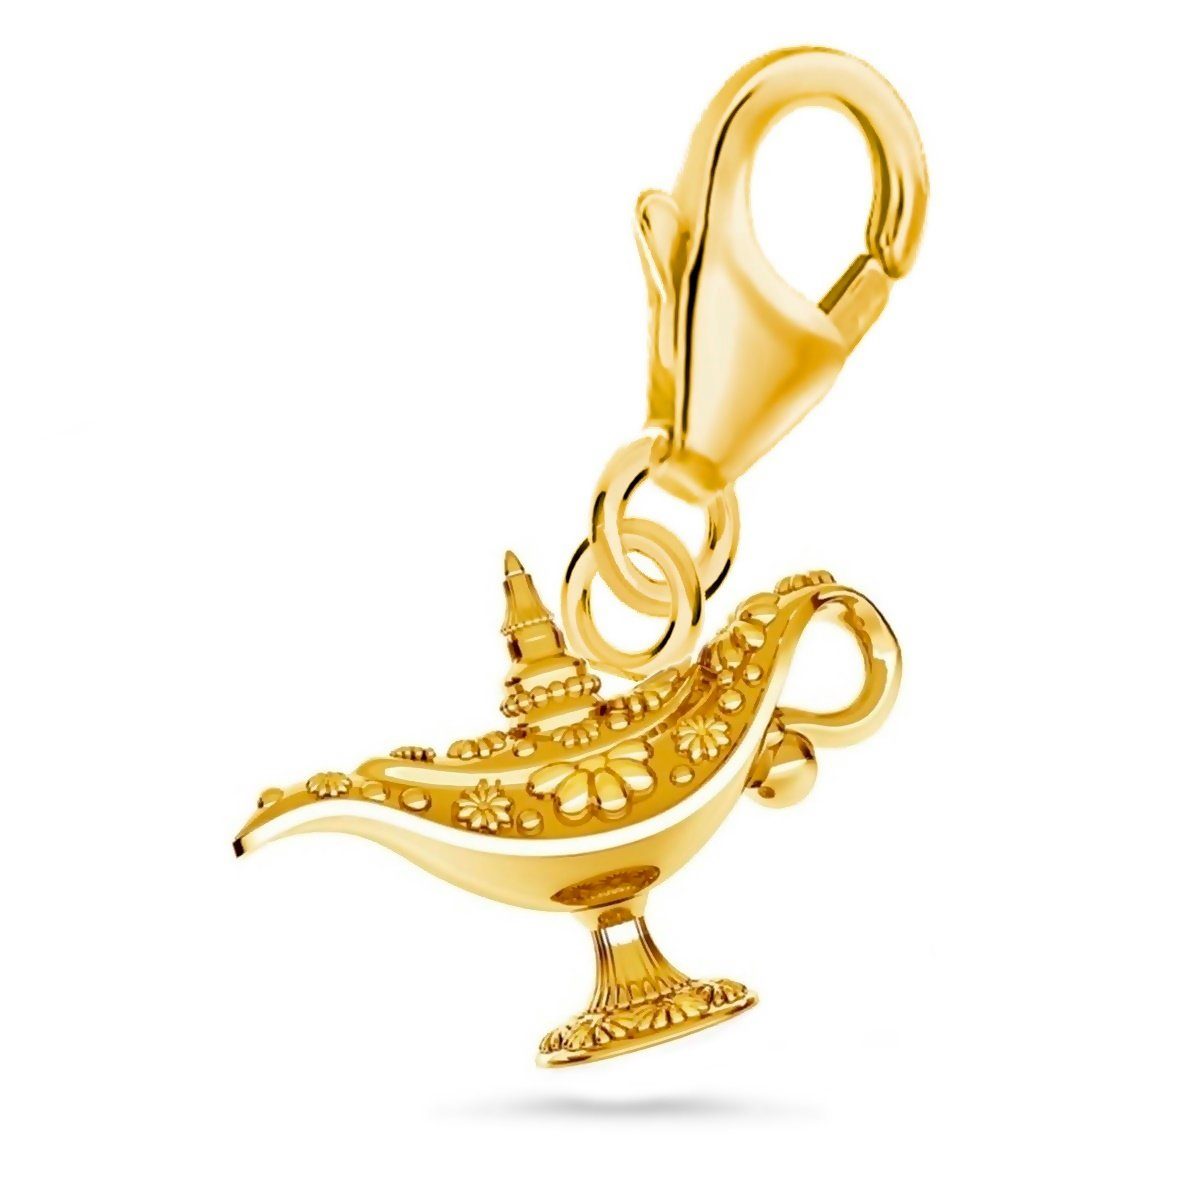 Damen Schmuck Goldene Hufeisen Charm-Einhänger mini klein Wunschlampe Wunderlampe Karabiner Charm 925 Silber Vergoldet (1 Stück,